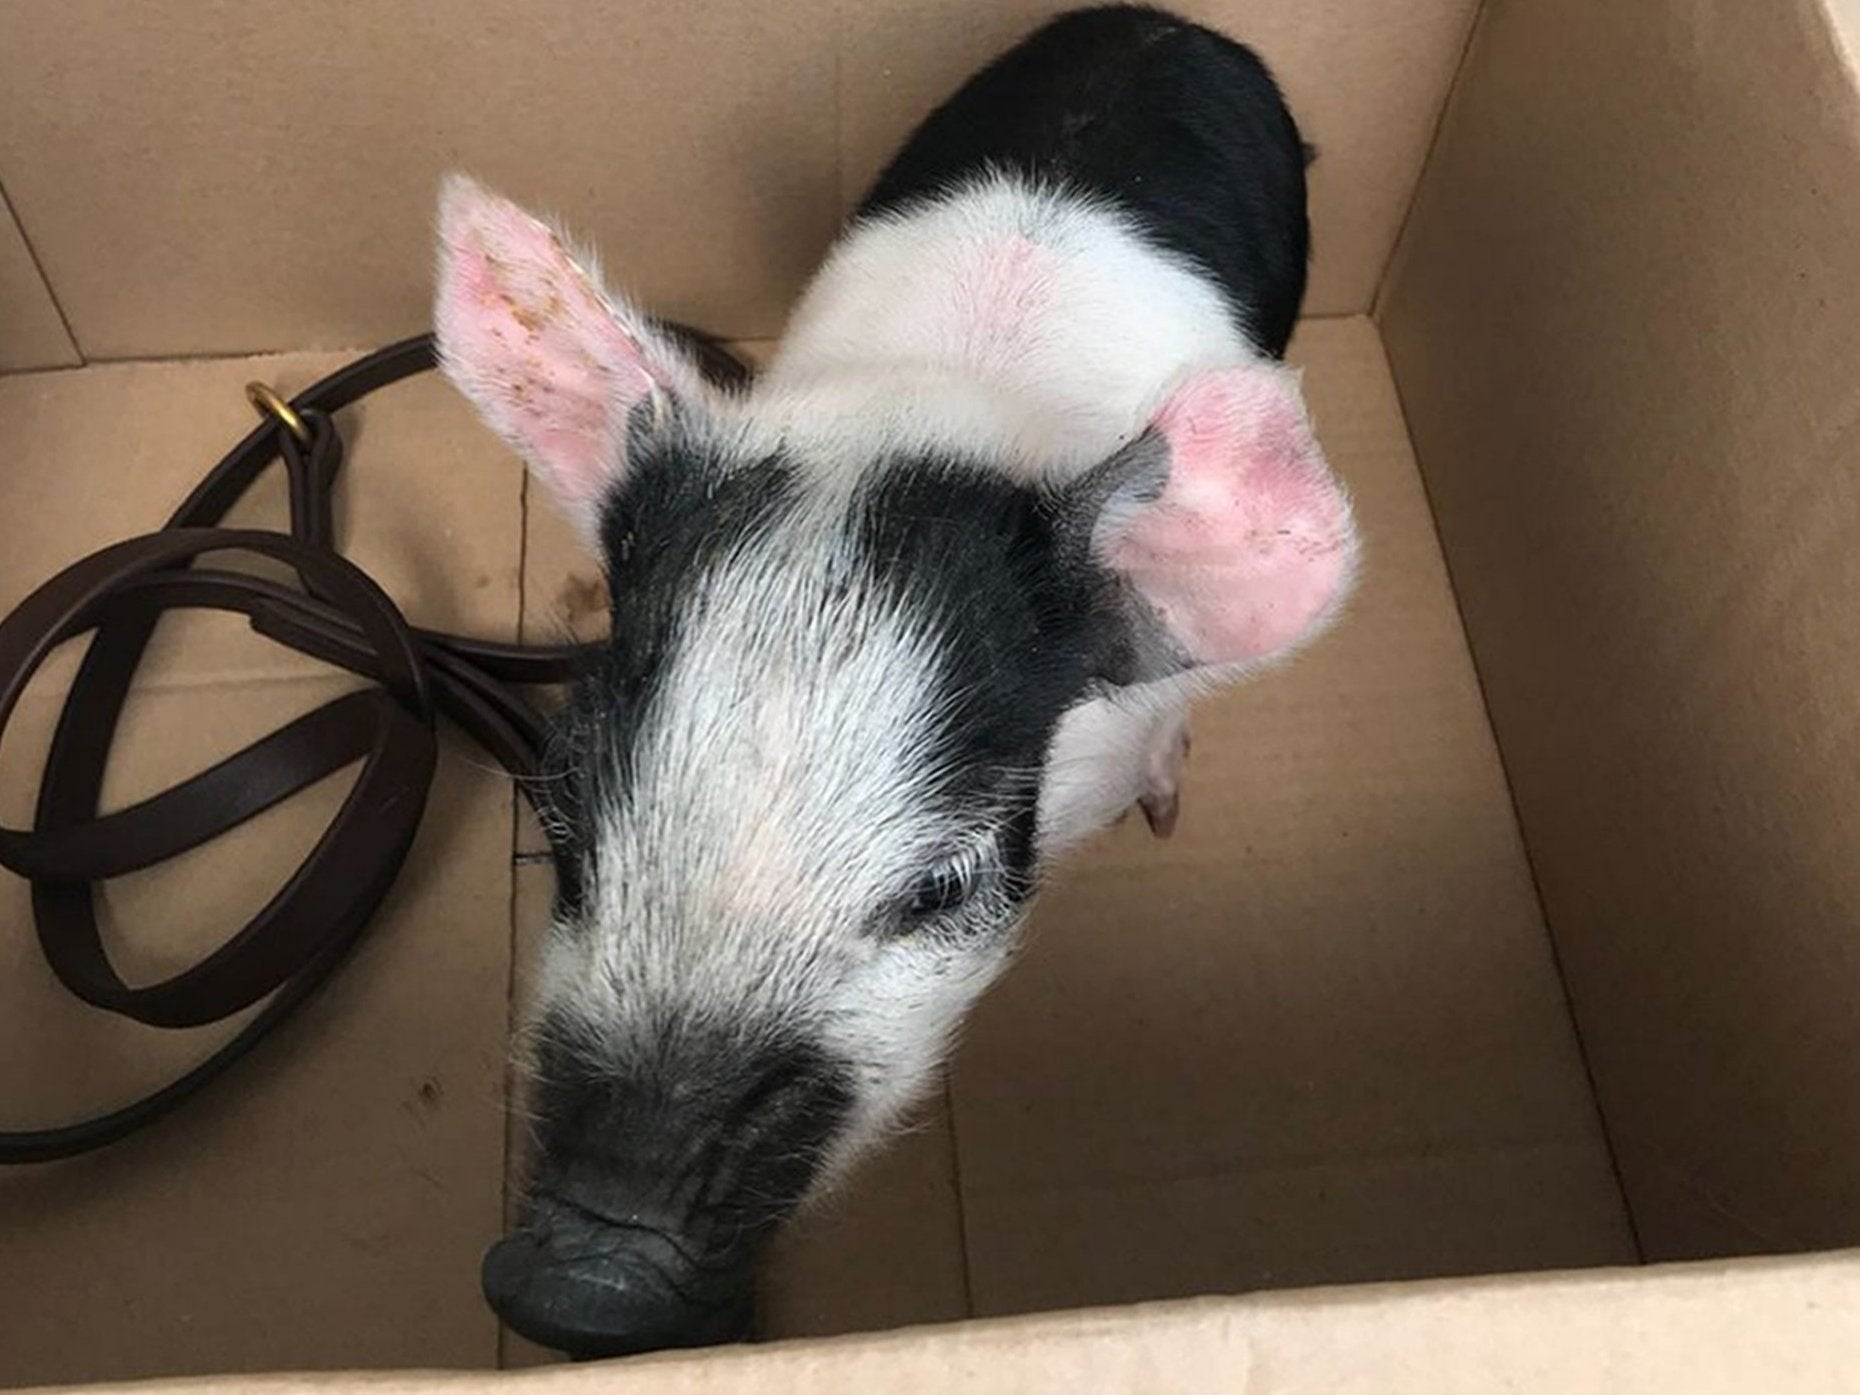 The pig was found 'running around' Norwich city centre